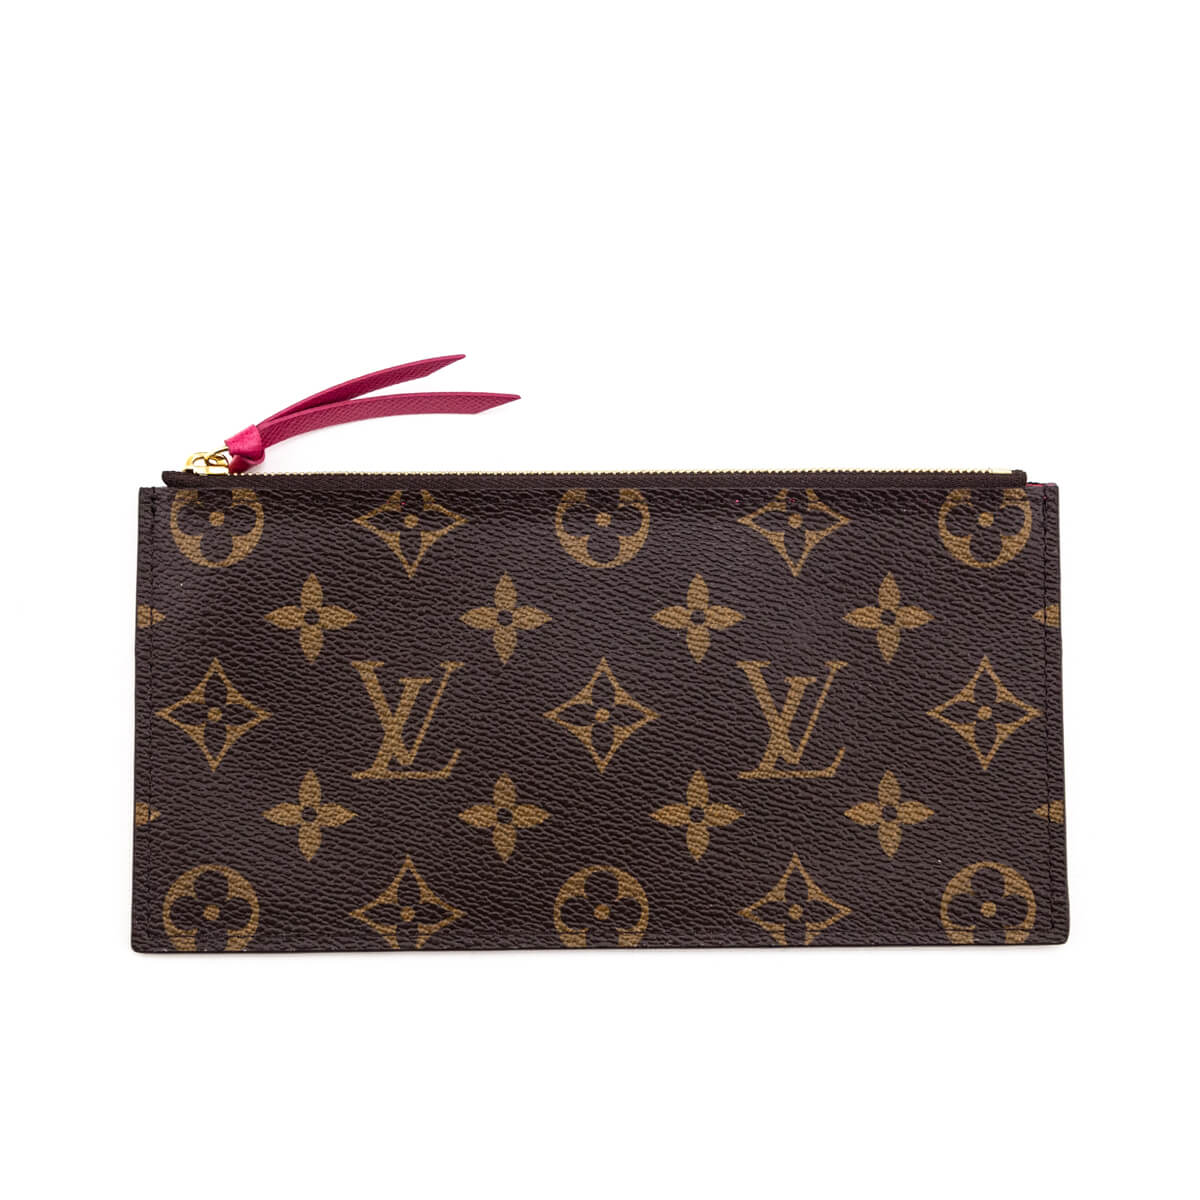 AUTHENTIC Louis Vuitton Hollywood Vivienne zippy wallet